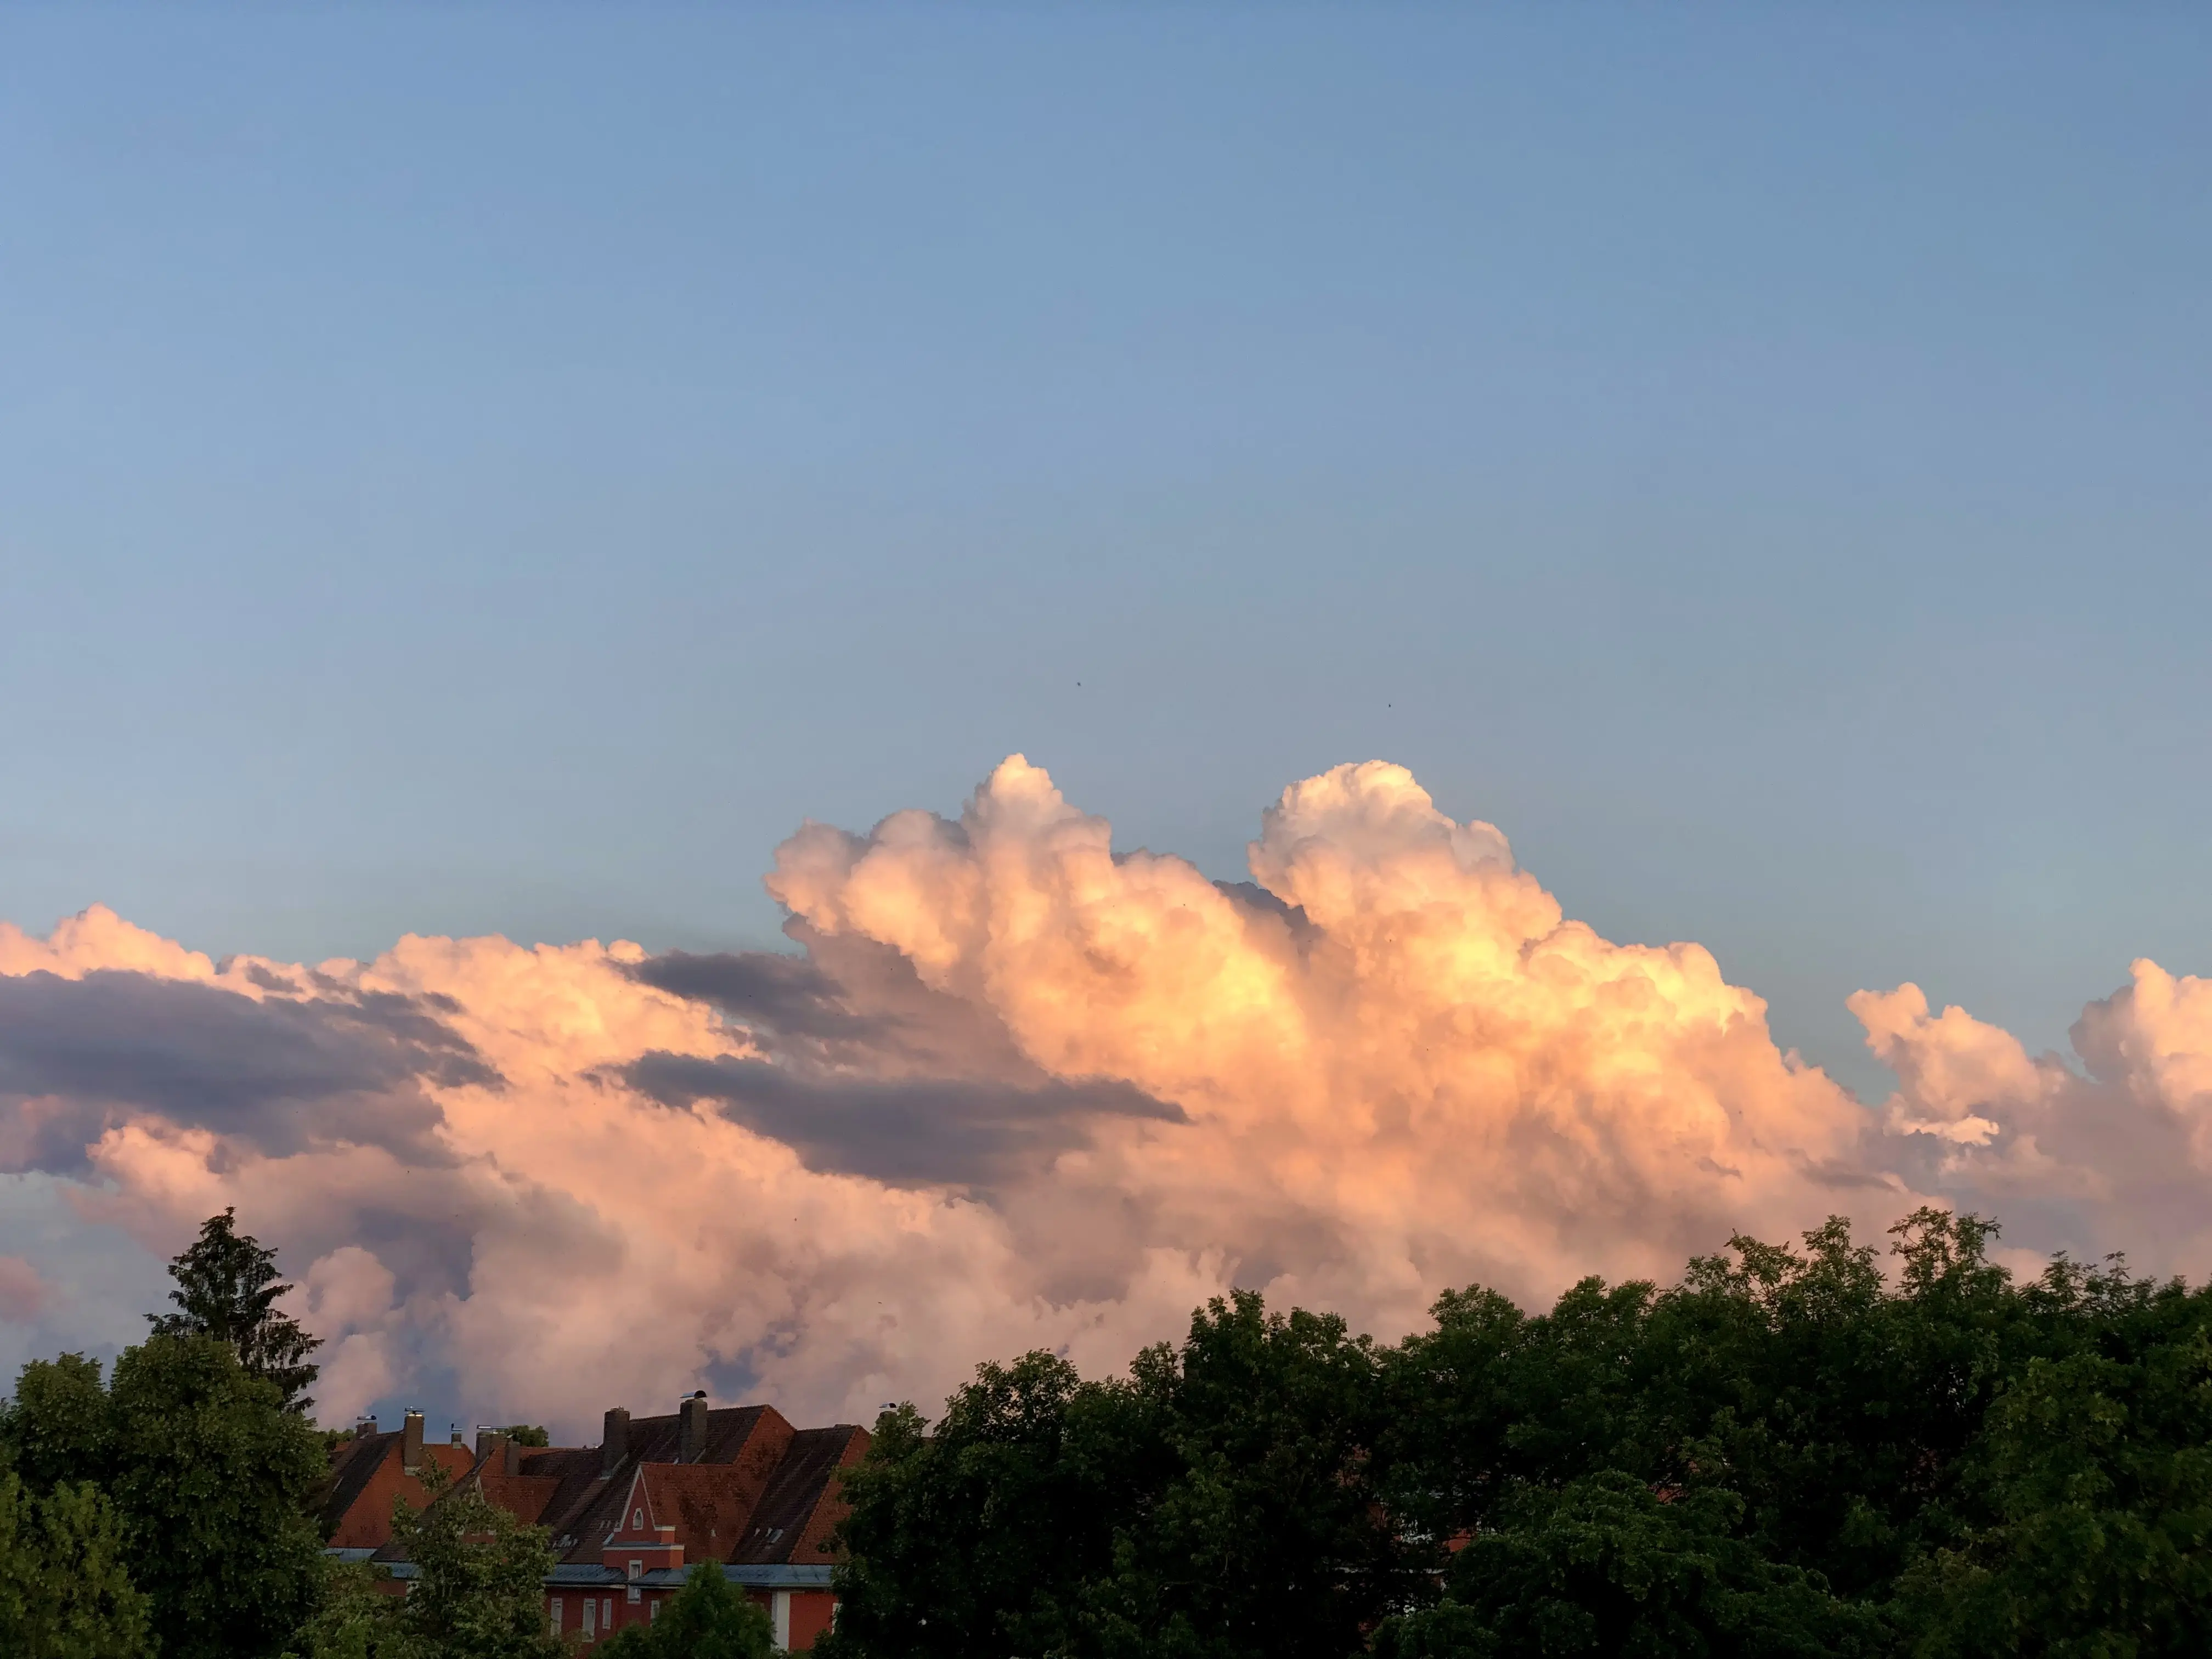 Evening cloud over Regensburg.